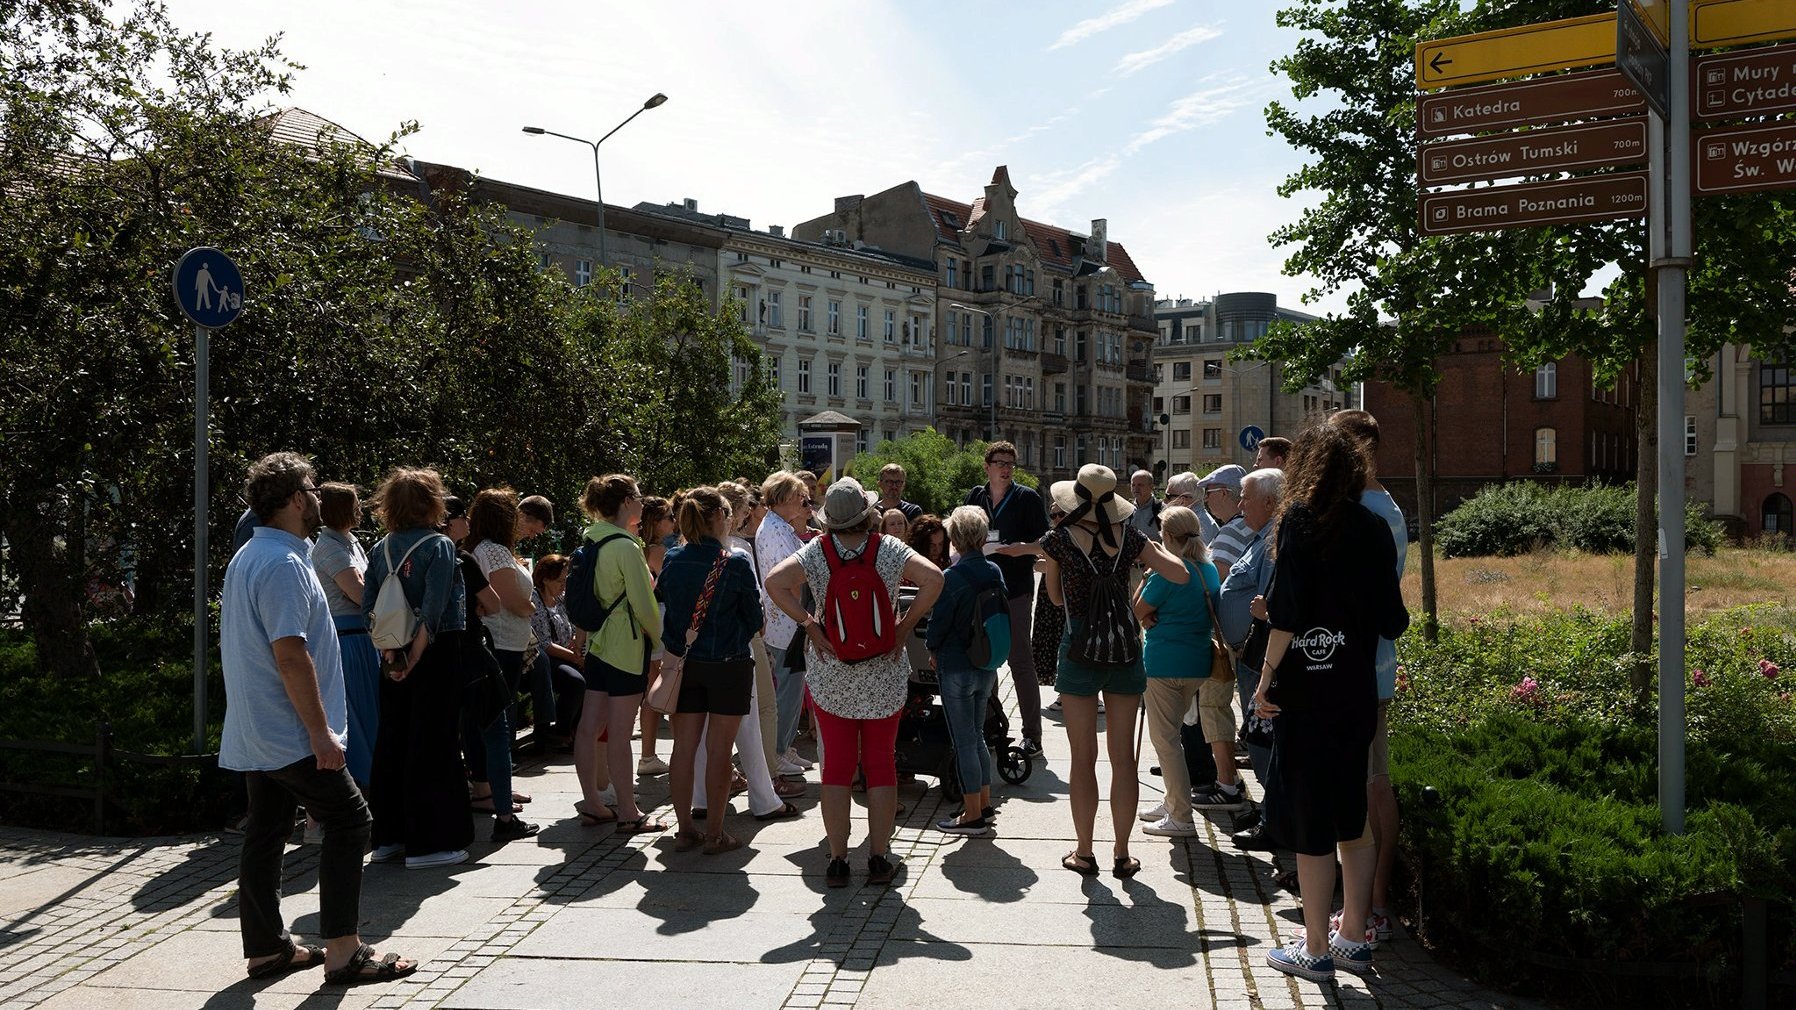 Grupa uczestników przechadzki stojąca na chodniku przed drogowskazem na Ostrów Tumski.